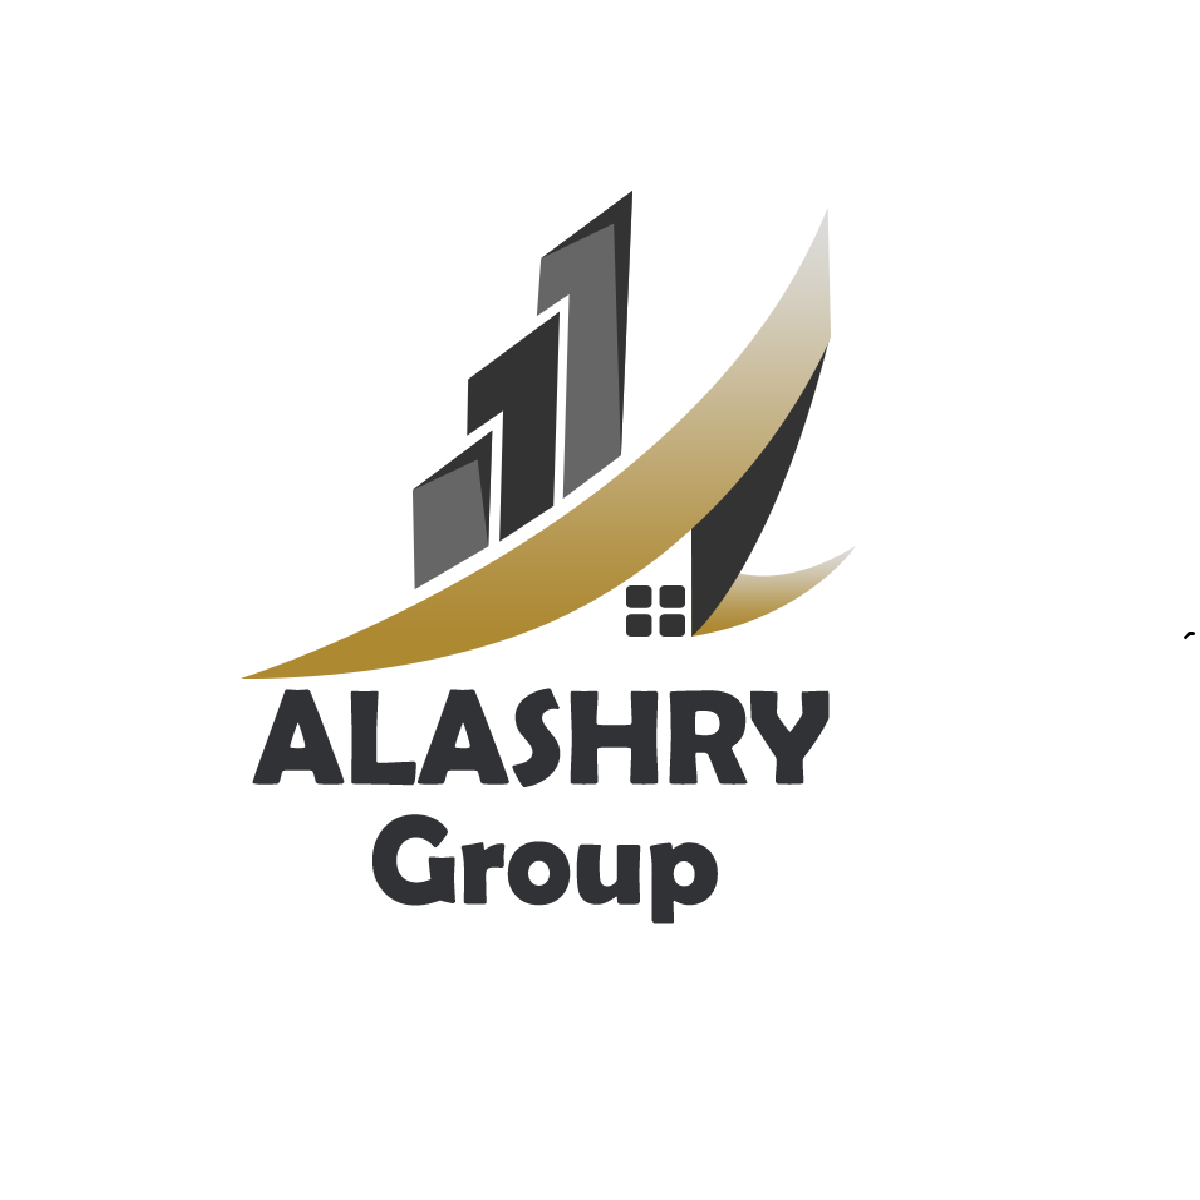 Al Ashry Group